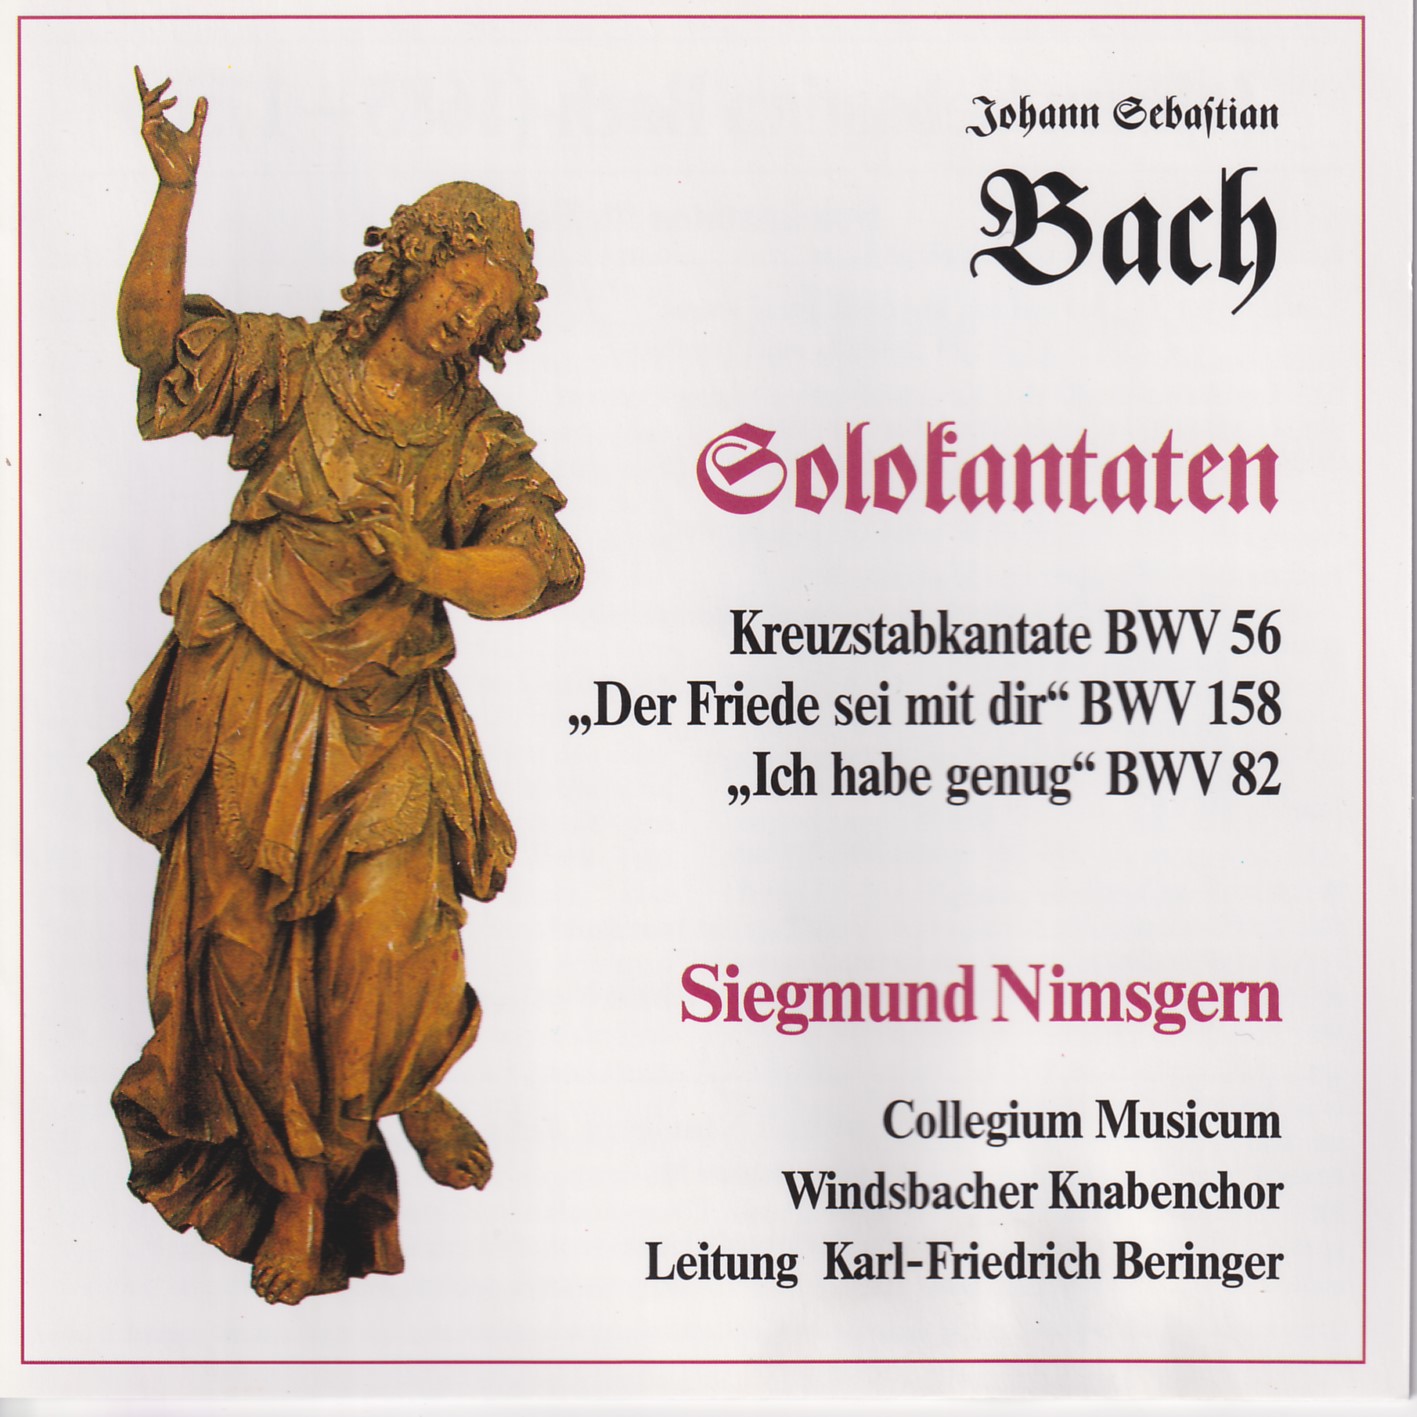 Johann Sebastian Bach - Solokantaten Nimsgern